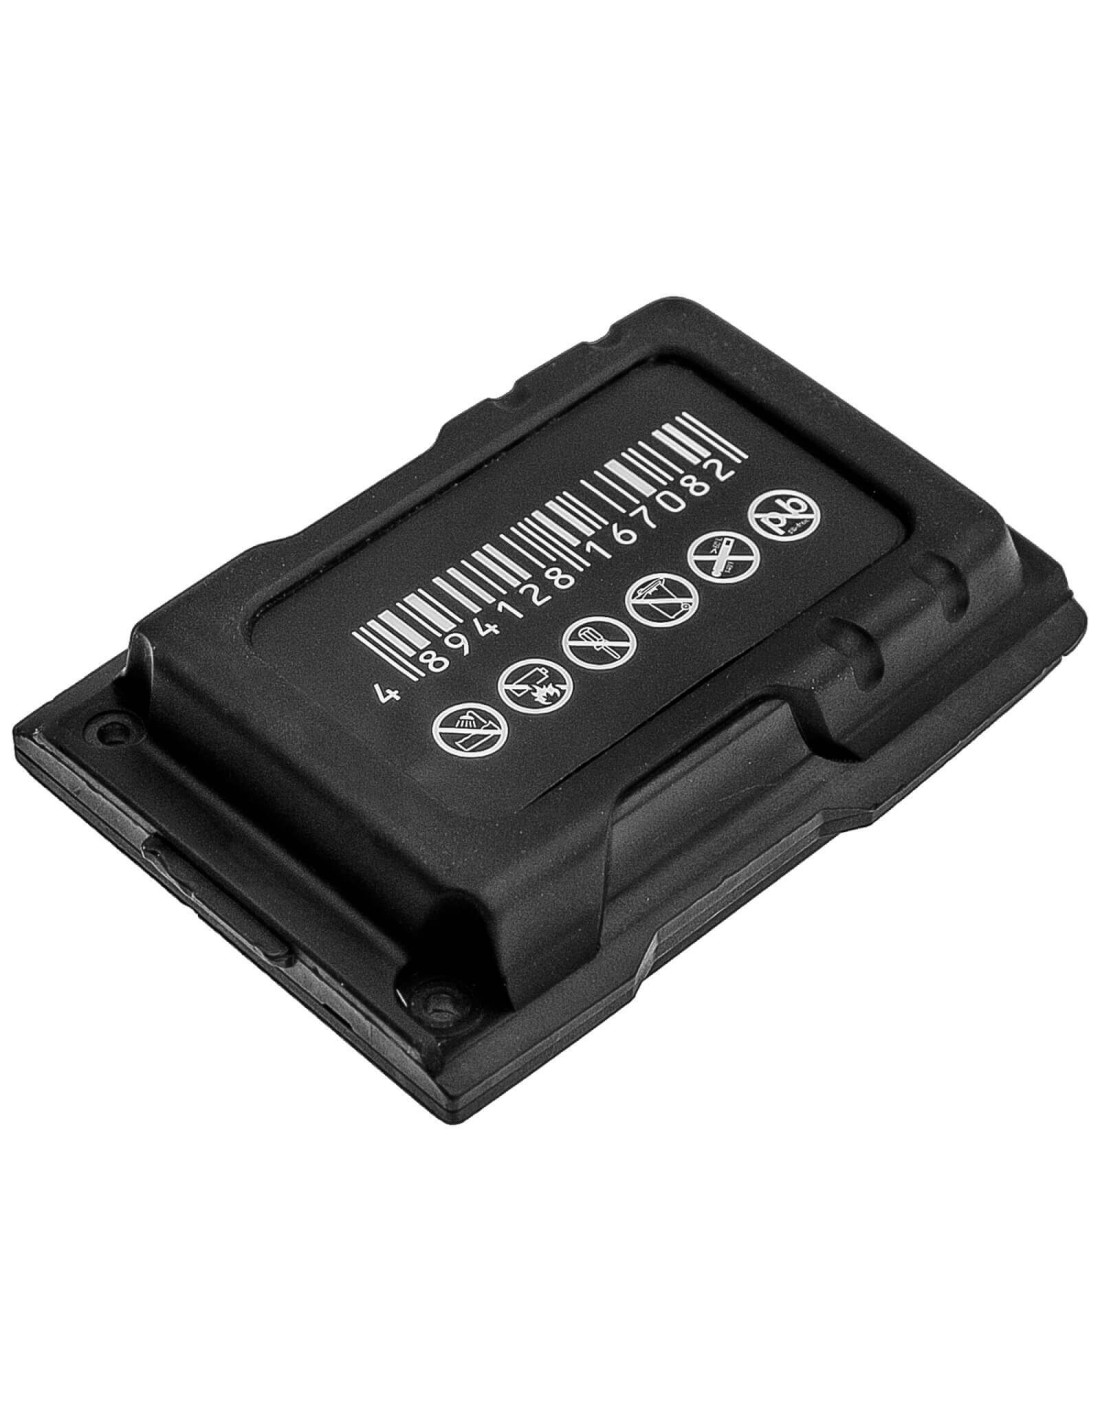 Battery for Sonim, Ecom Ex-handy 07, Ecom Ex-handy 08, Xp3410 Is 3.7V, 1850mAh - 6.85Wh